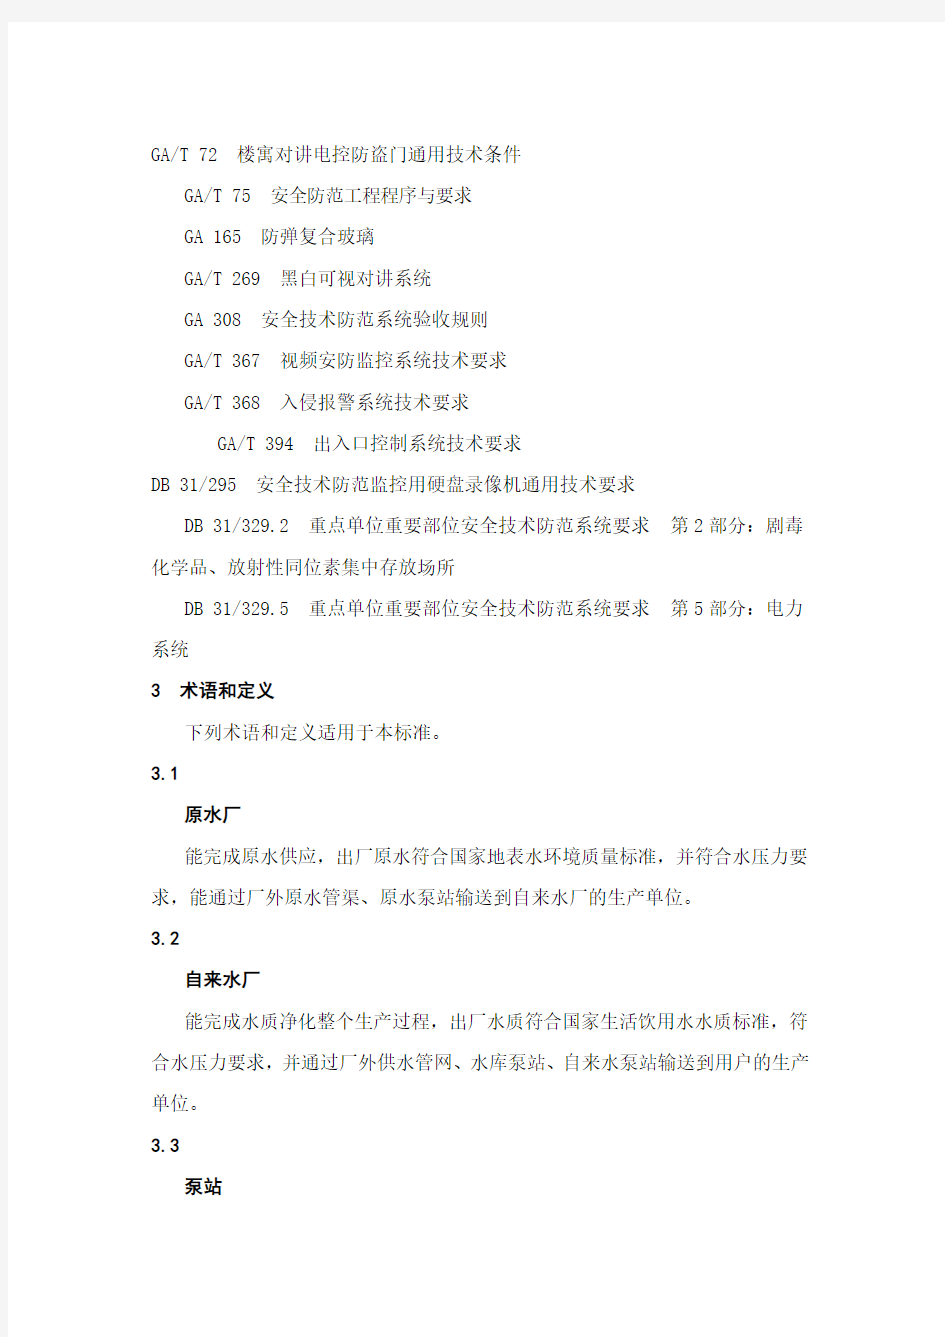 (技术规范标准)上海市质量技术监督局发布上海市地方标准重点单位重要部位安全技术